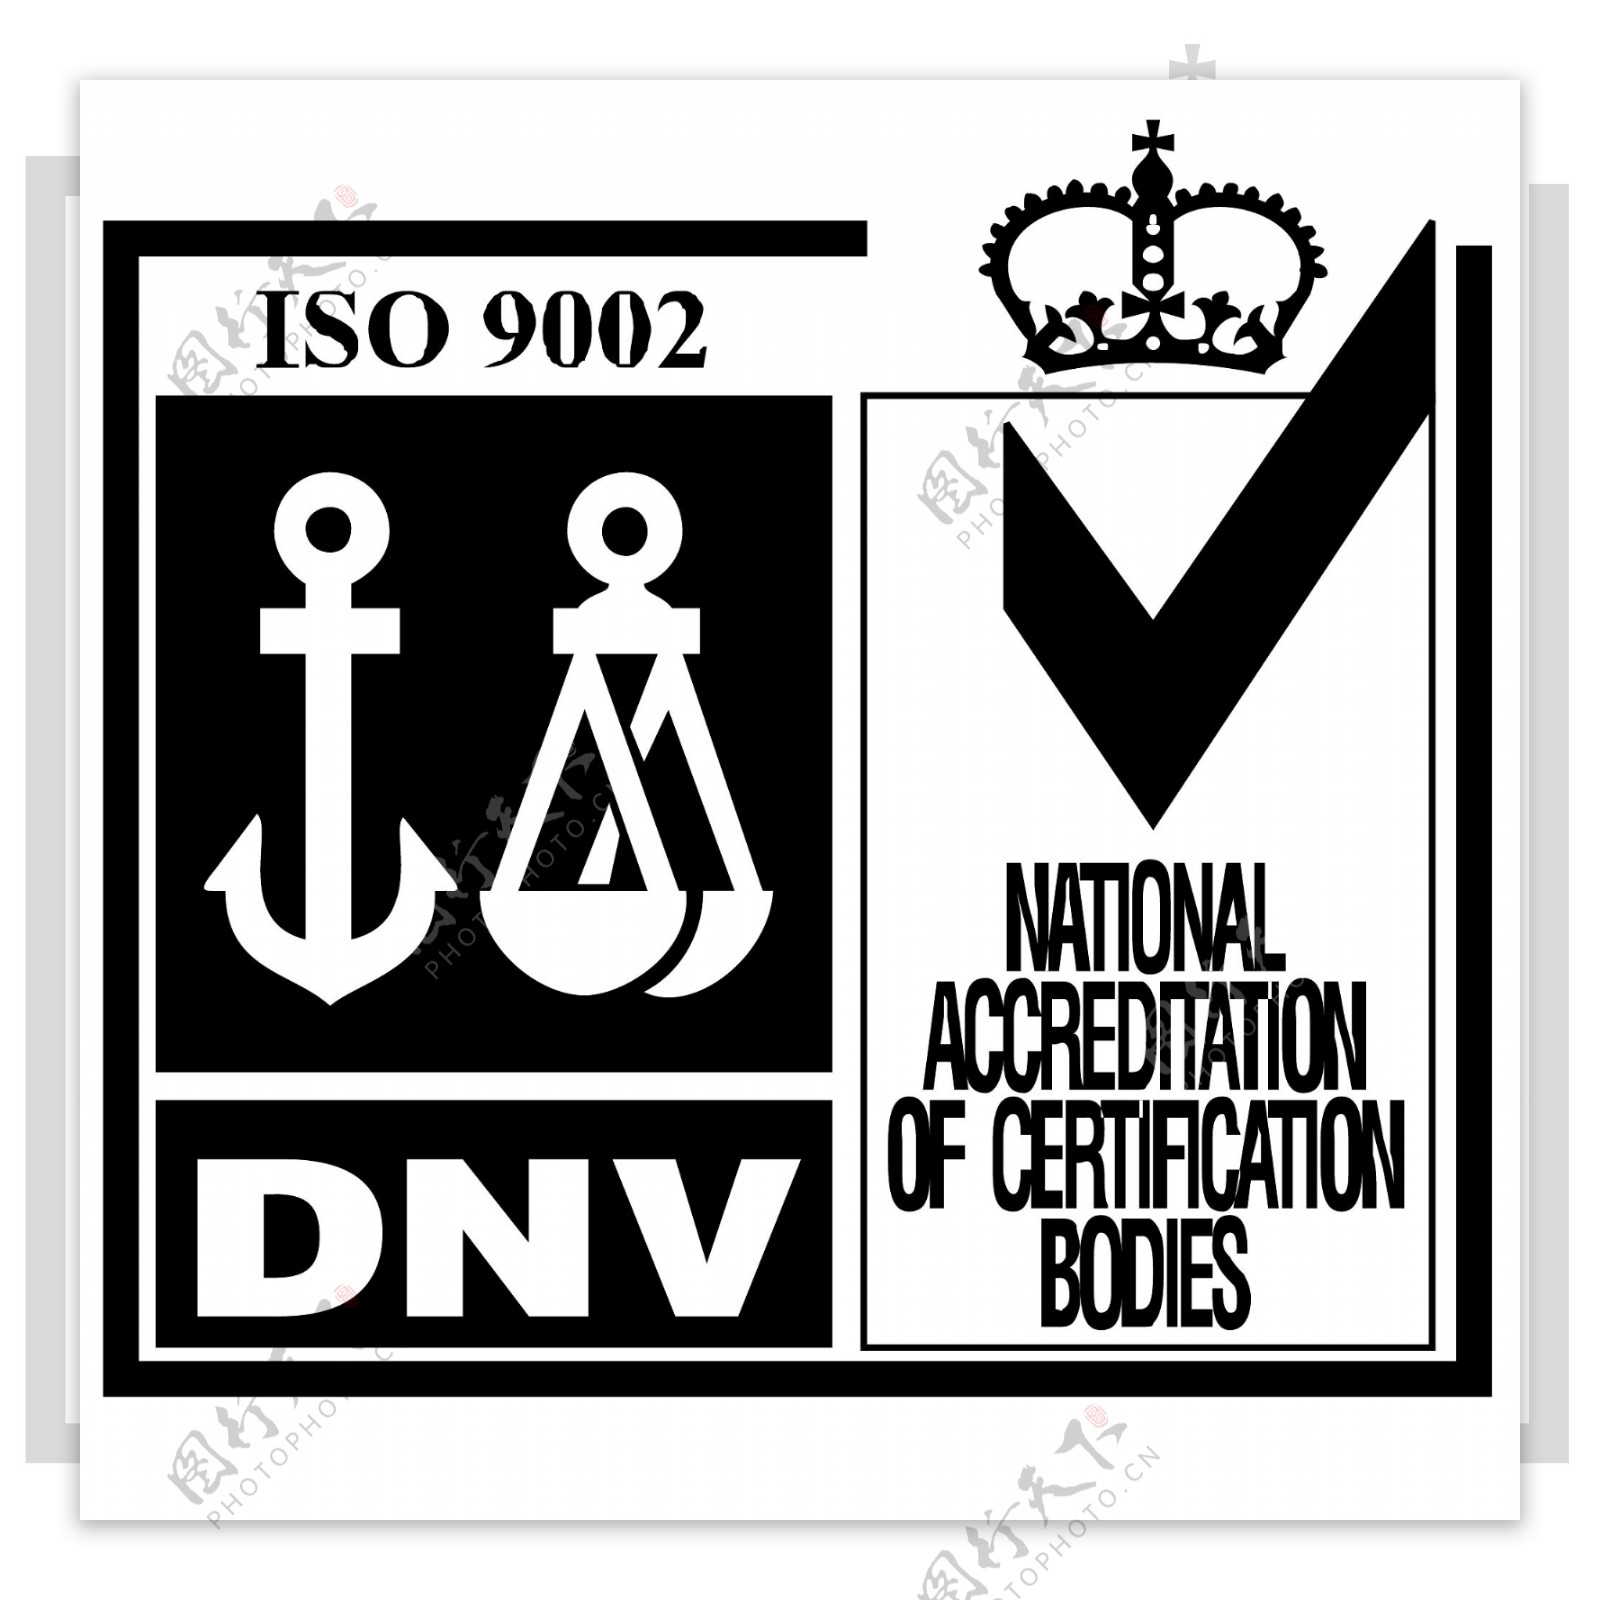 DNV国家认证机构认可